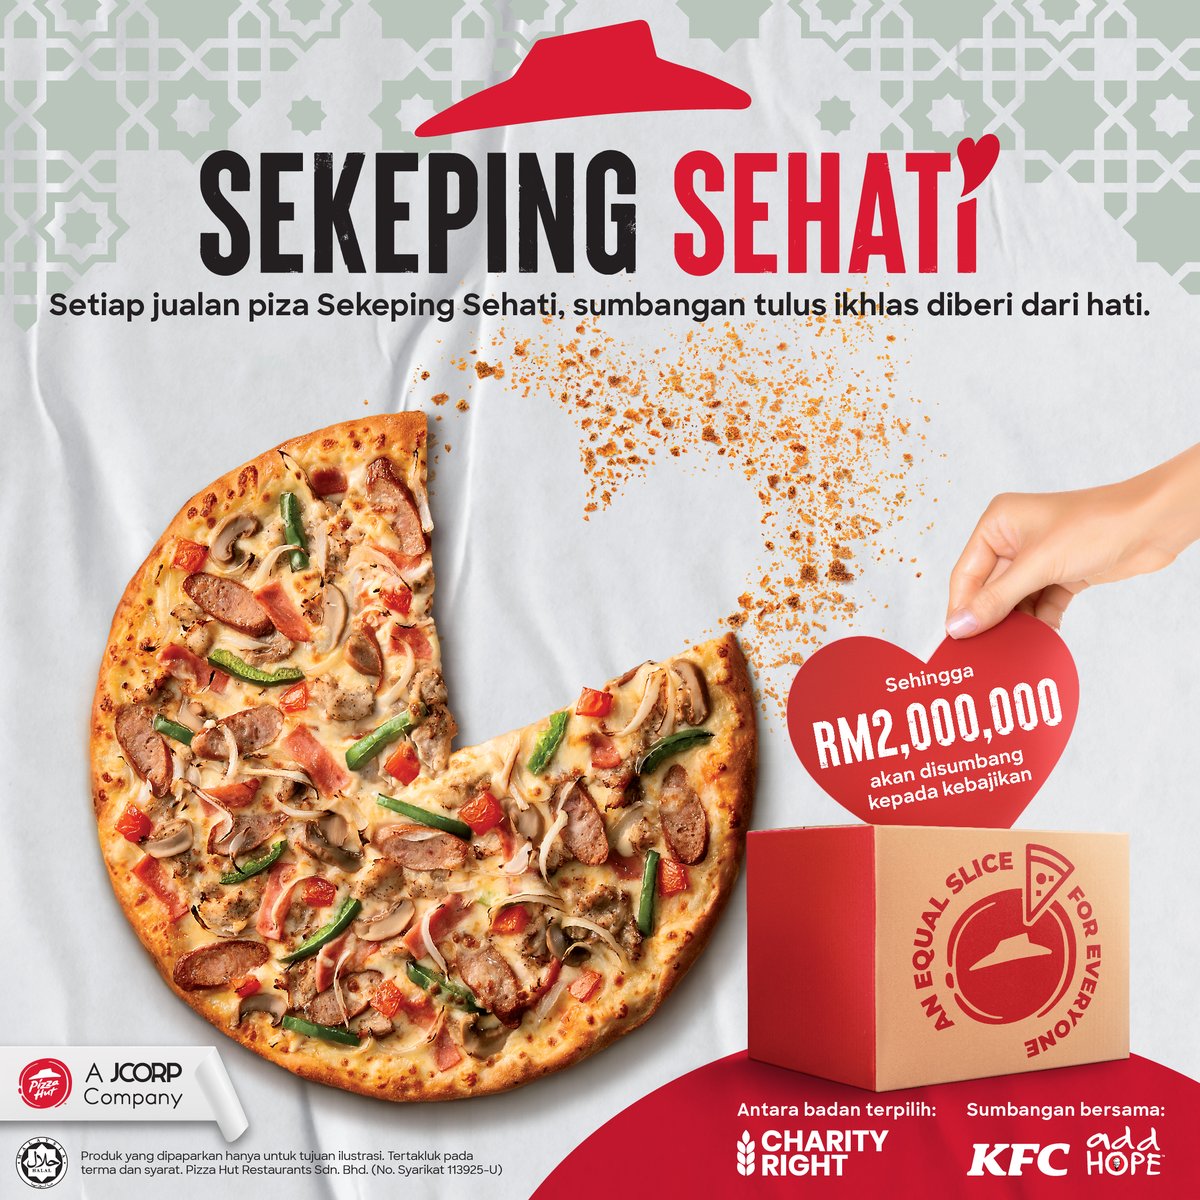 Lebih dari 1 dalam 10 kanak-kanak di Malaysia makan kurang daripada 3 kali sehari. Kempen Sehati adalah kerjasama Pizza Hut dan KFC dalam membantu insan-insan yang memerlukan dalam aspek sosial dan pembelajaran melalui sumbangan ke program Feed to Educate oleh Charity Right